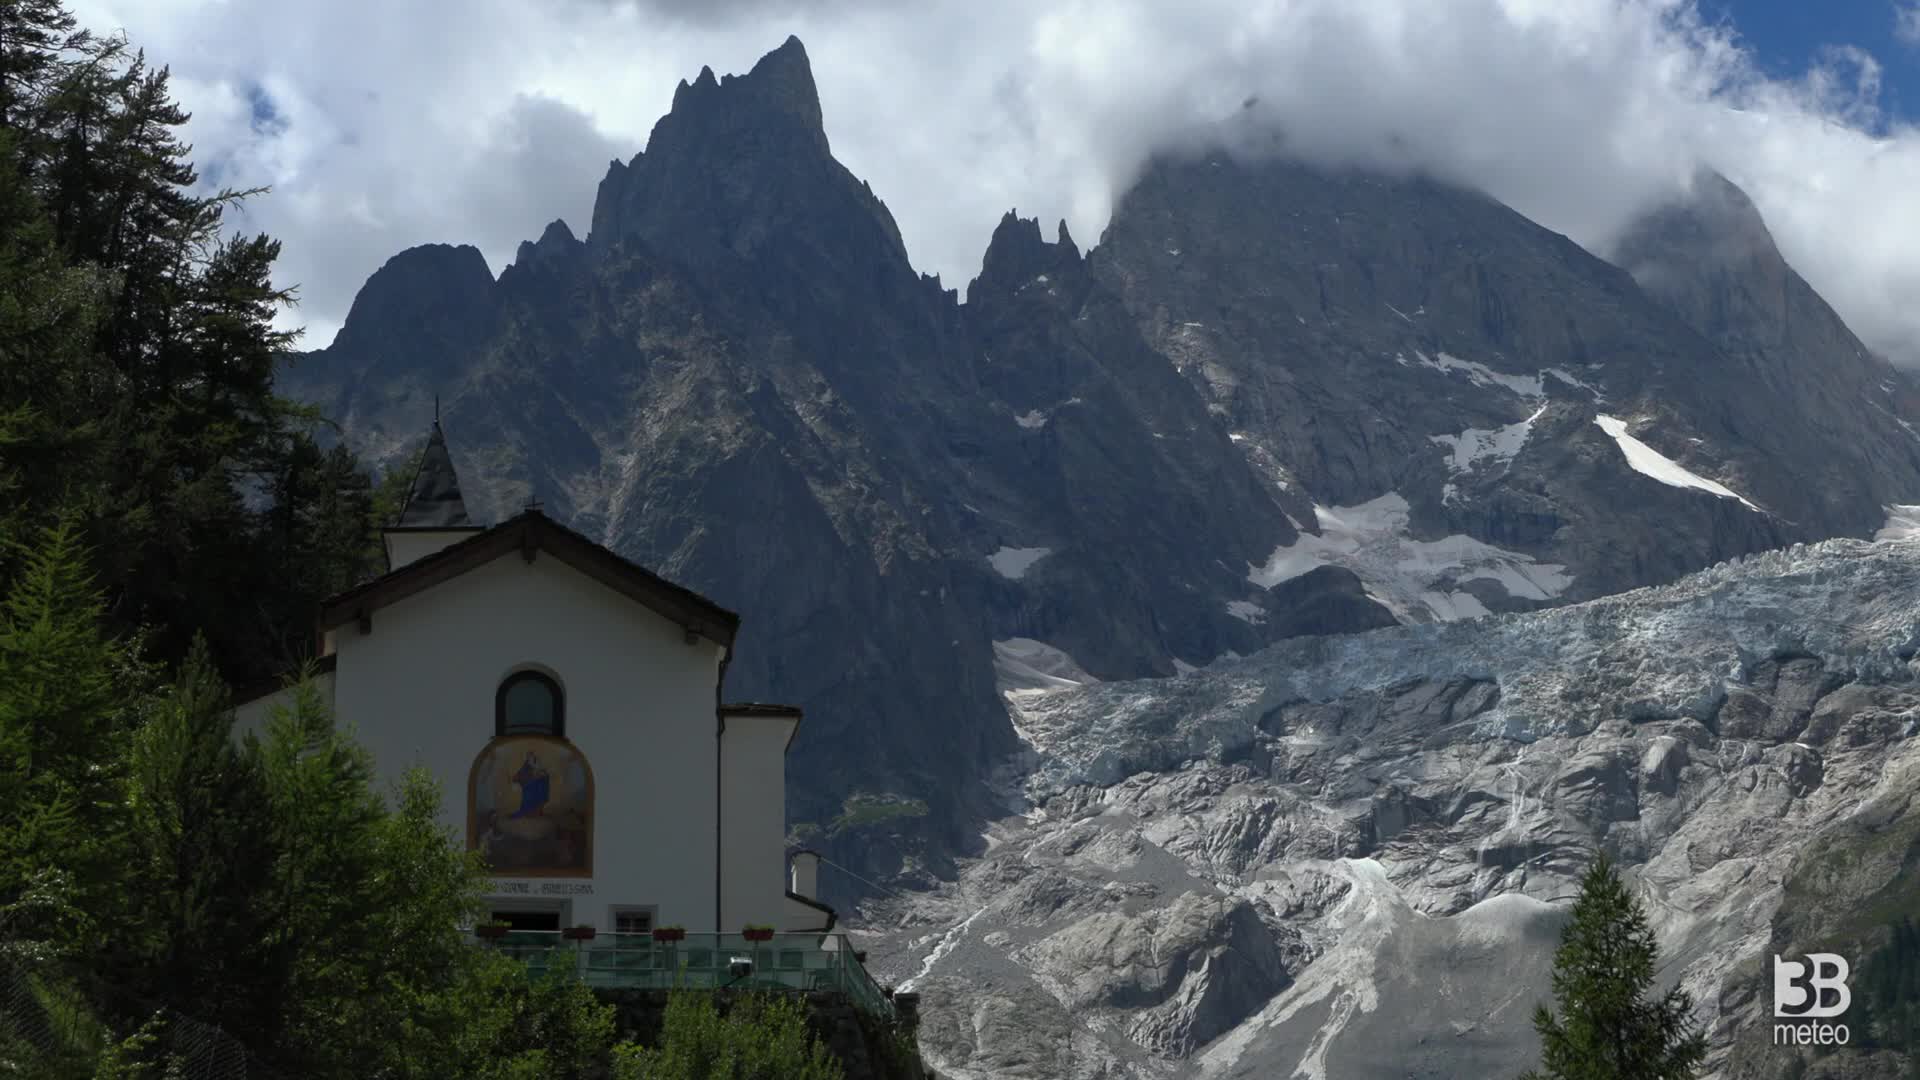 Cronaca meteo, Valle d'Aosta - Ghiacciaio si ritira: la storia emblematica del santuario in Val Veny